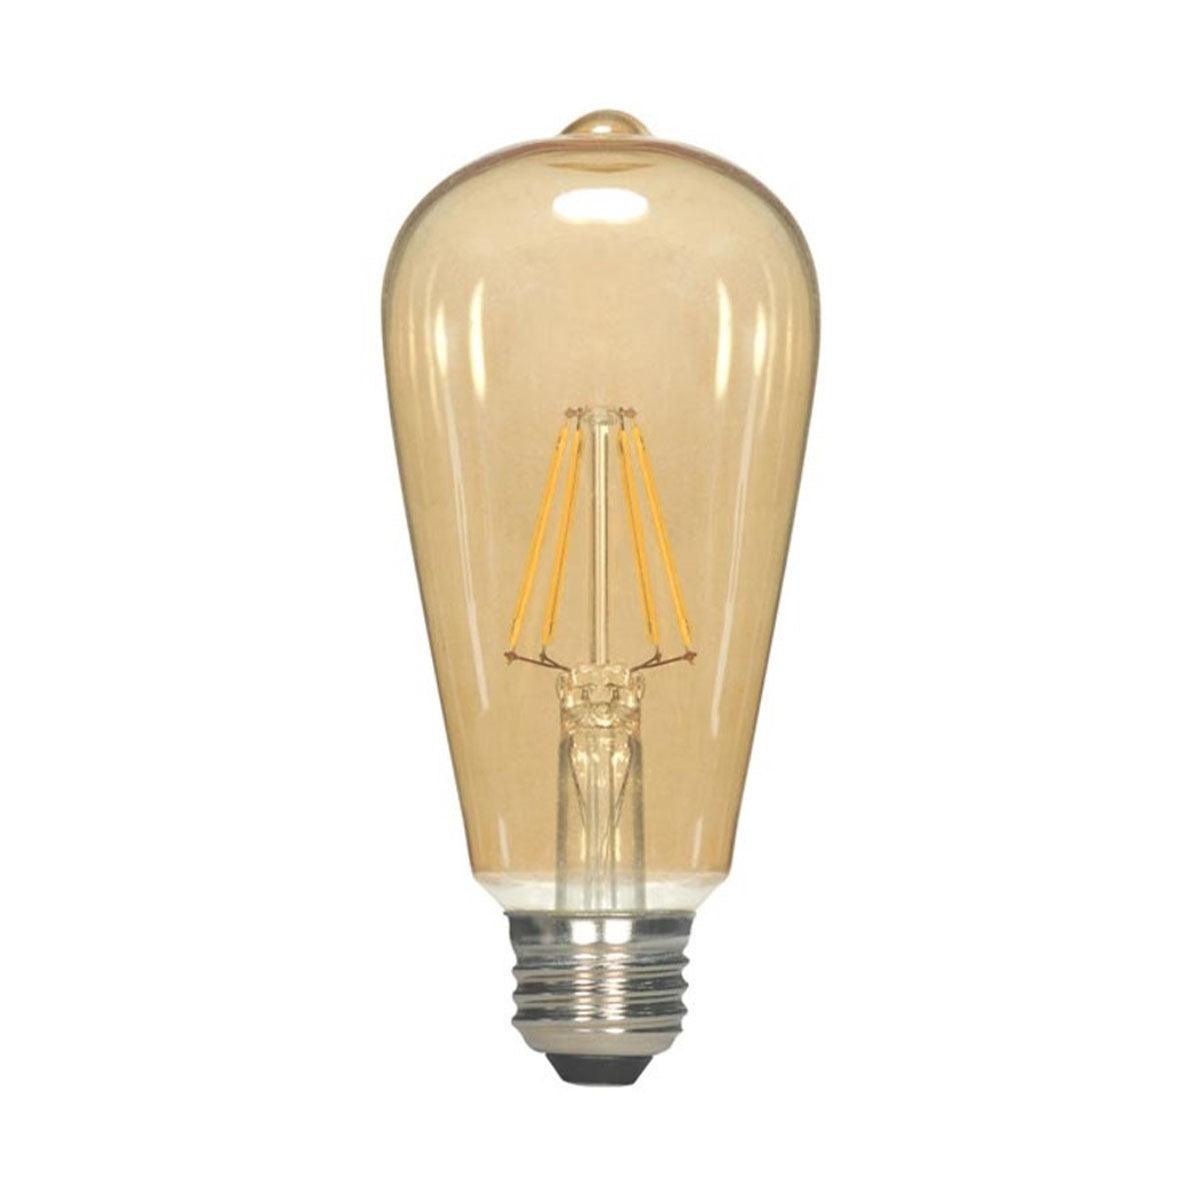 LED ST19 Straight Tapered Bulb, 7 Watt, 650 Lumens, 2000K, E26 Medium Base, Amber Finish - Bees Lighting